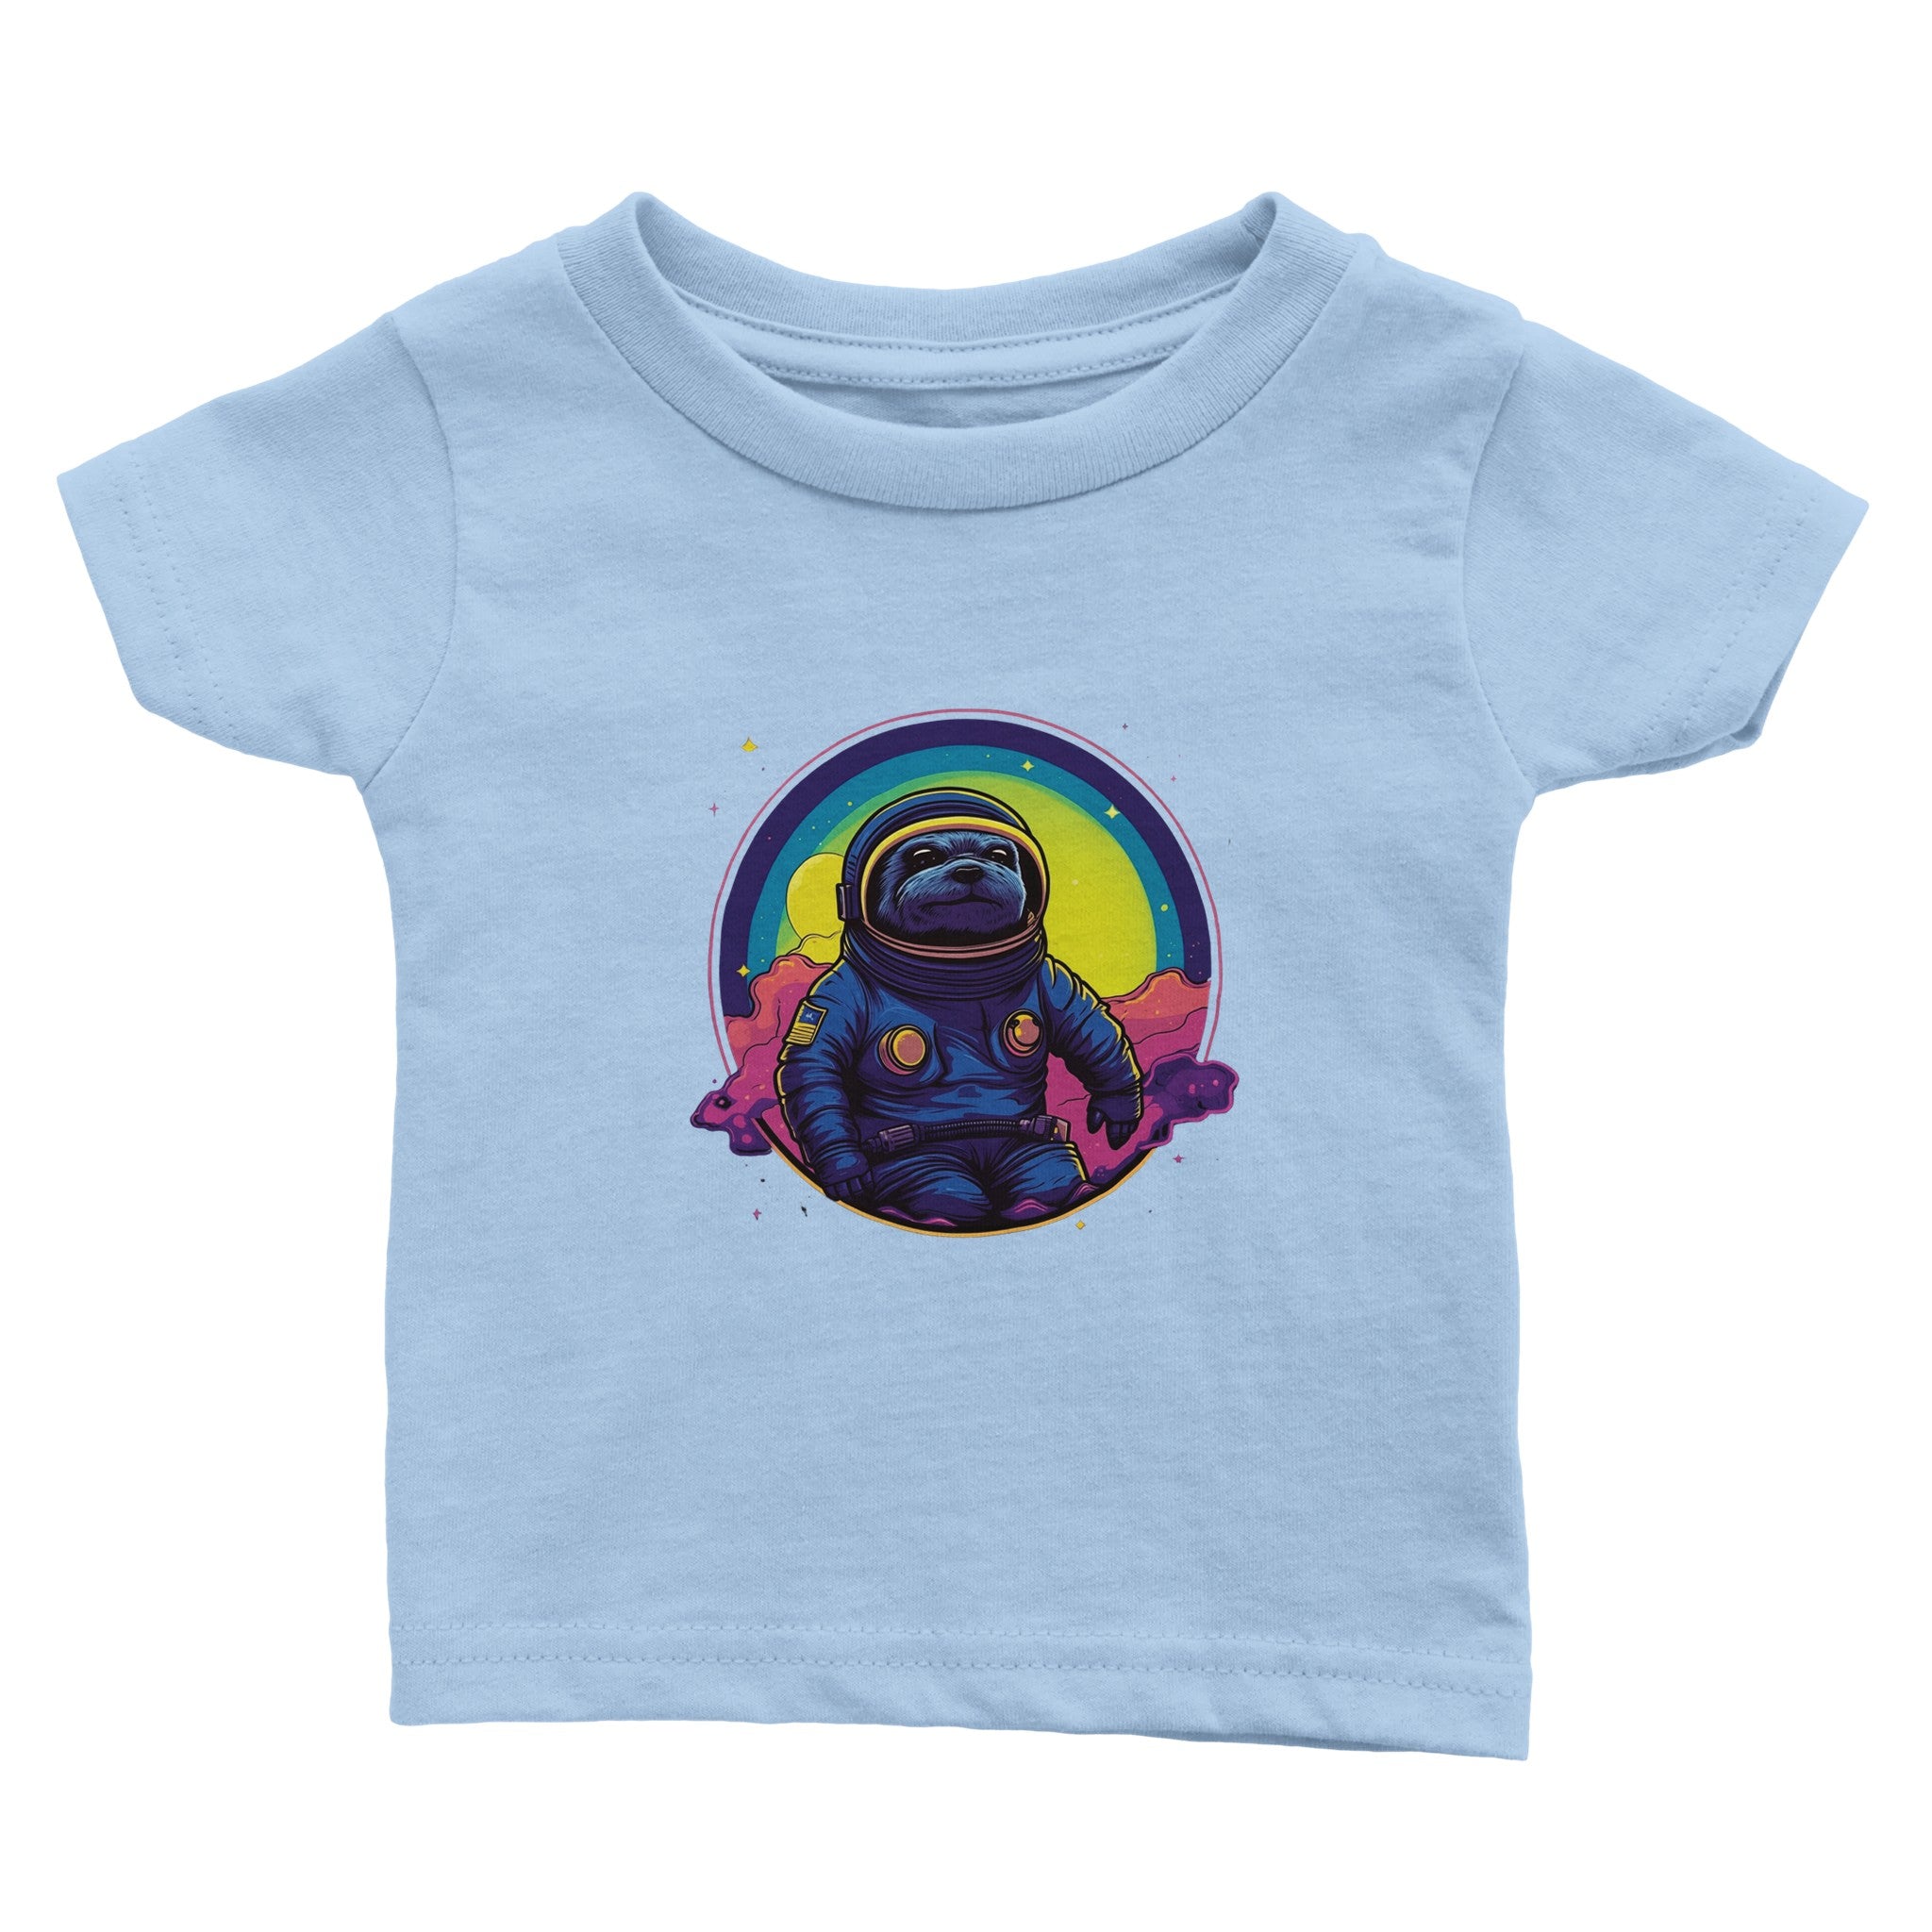 Cosmic Sloth Astronaut Baby Crewneck T-shirt - Optimalprint